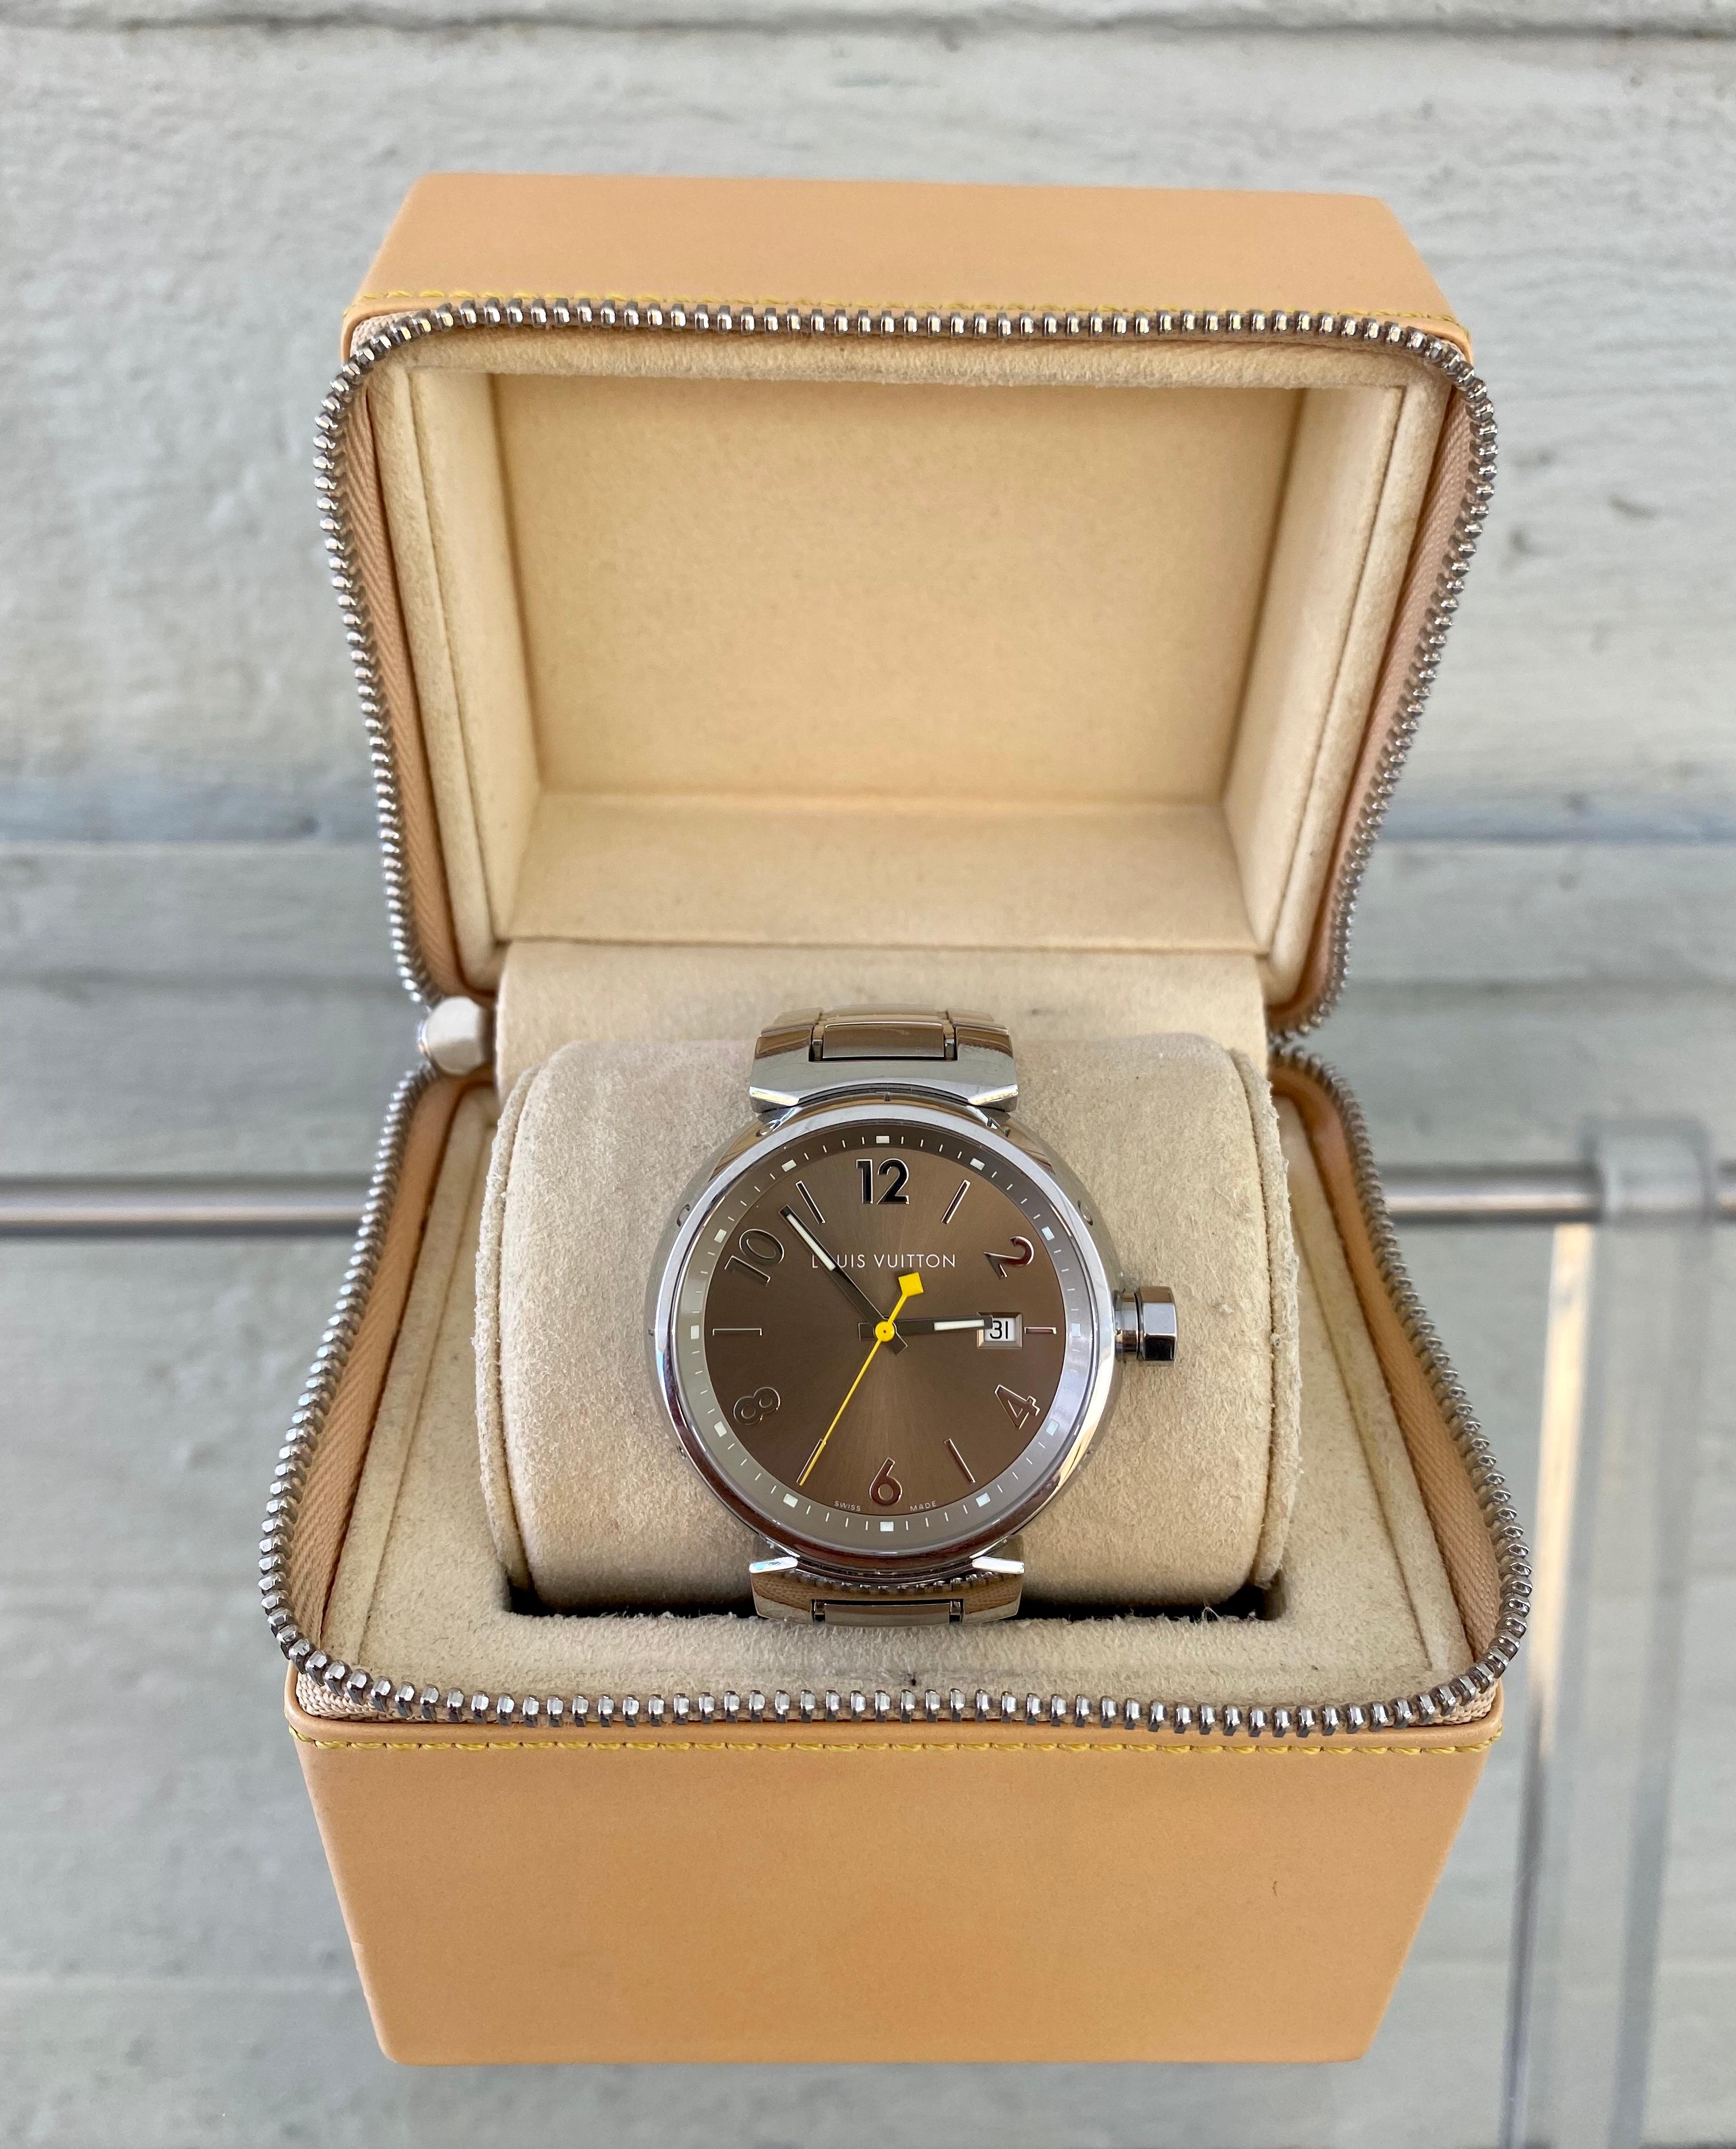 Classique et intemporel  Louis Vuitton Tambour. Cette élégante collection de montres a été lancée en 2000. Depuis, elle est devenue la montre emblématique de la marque. Il est proposé dans différents styles pour l'homme ou la femme. Le Tambour, qui